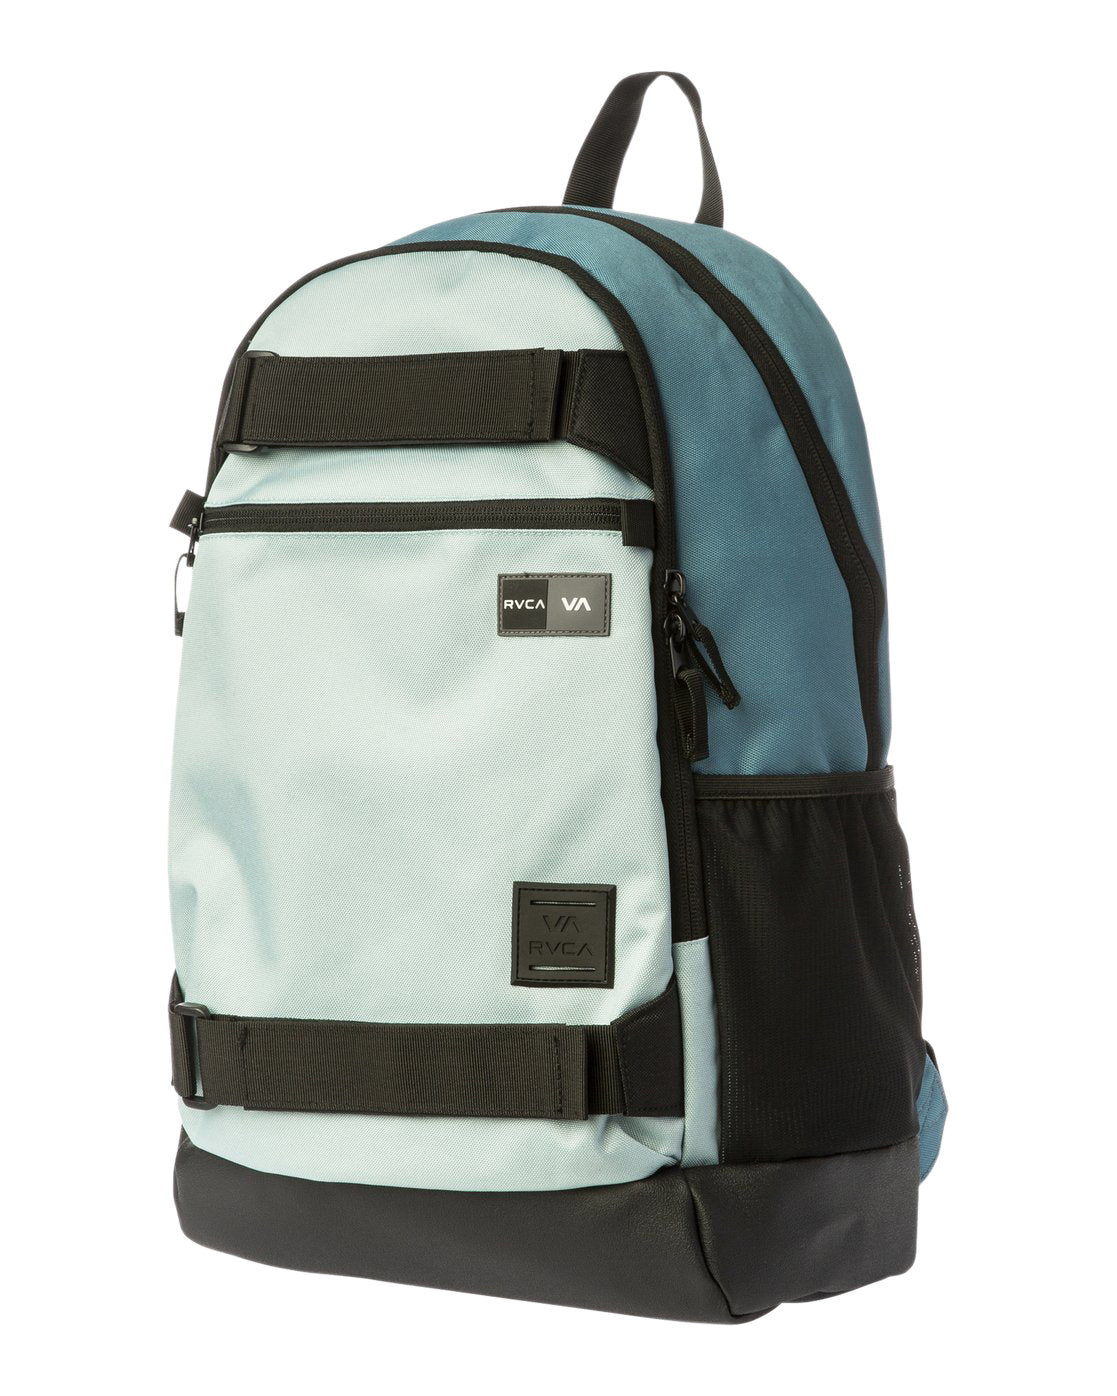 RVCA Curb Backpack